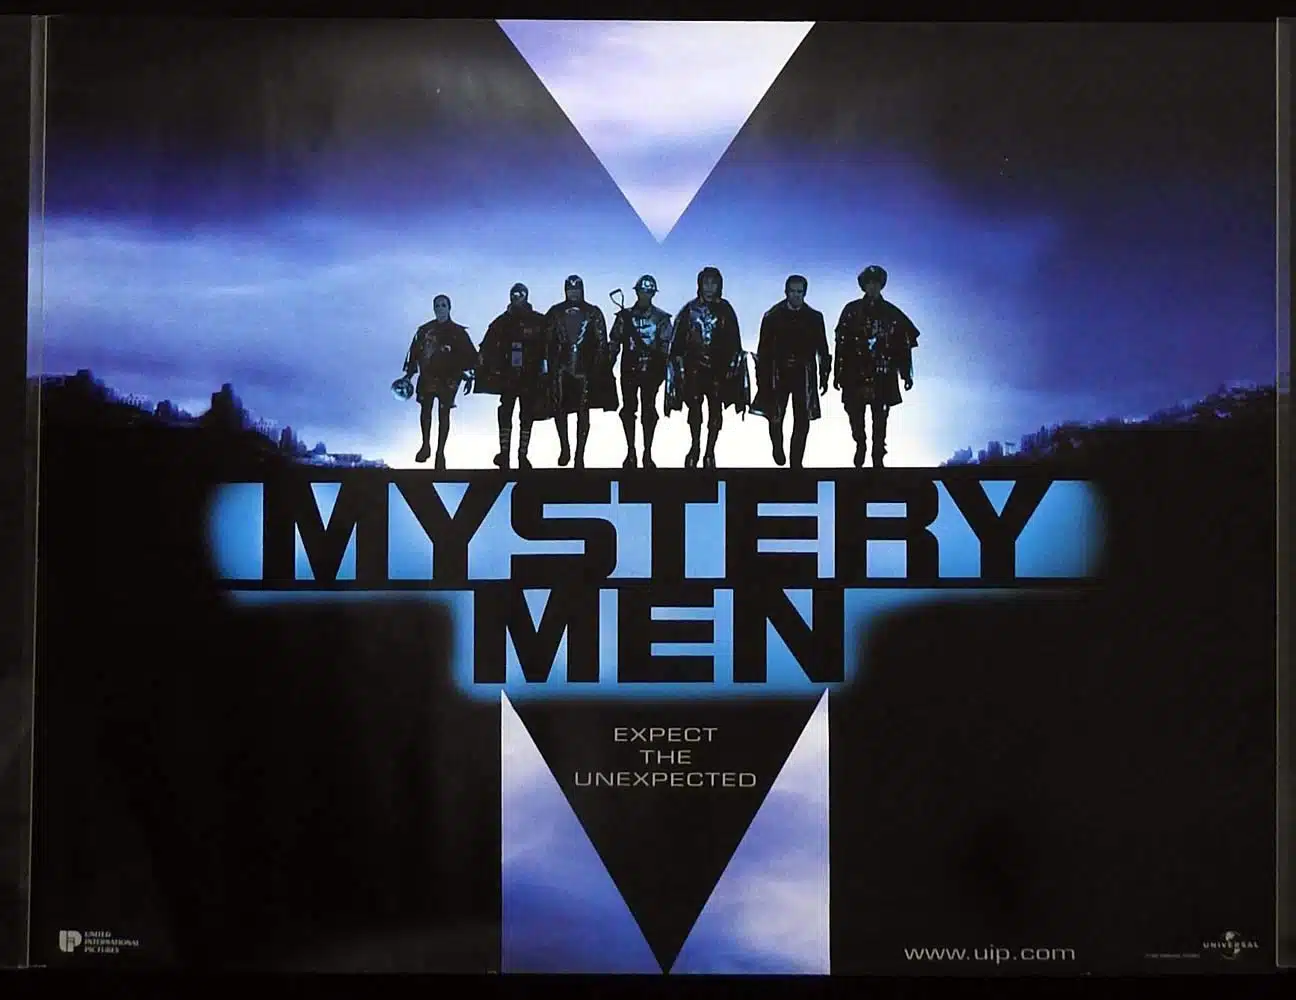 MYSTERY MEN Original DS British Quad Movie Poster Ben Stiller Hank Azaria William H. Macy